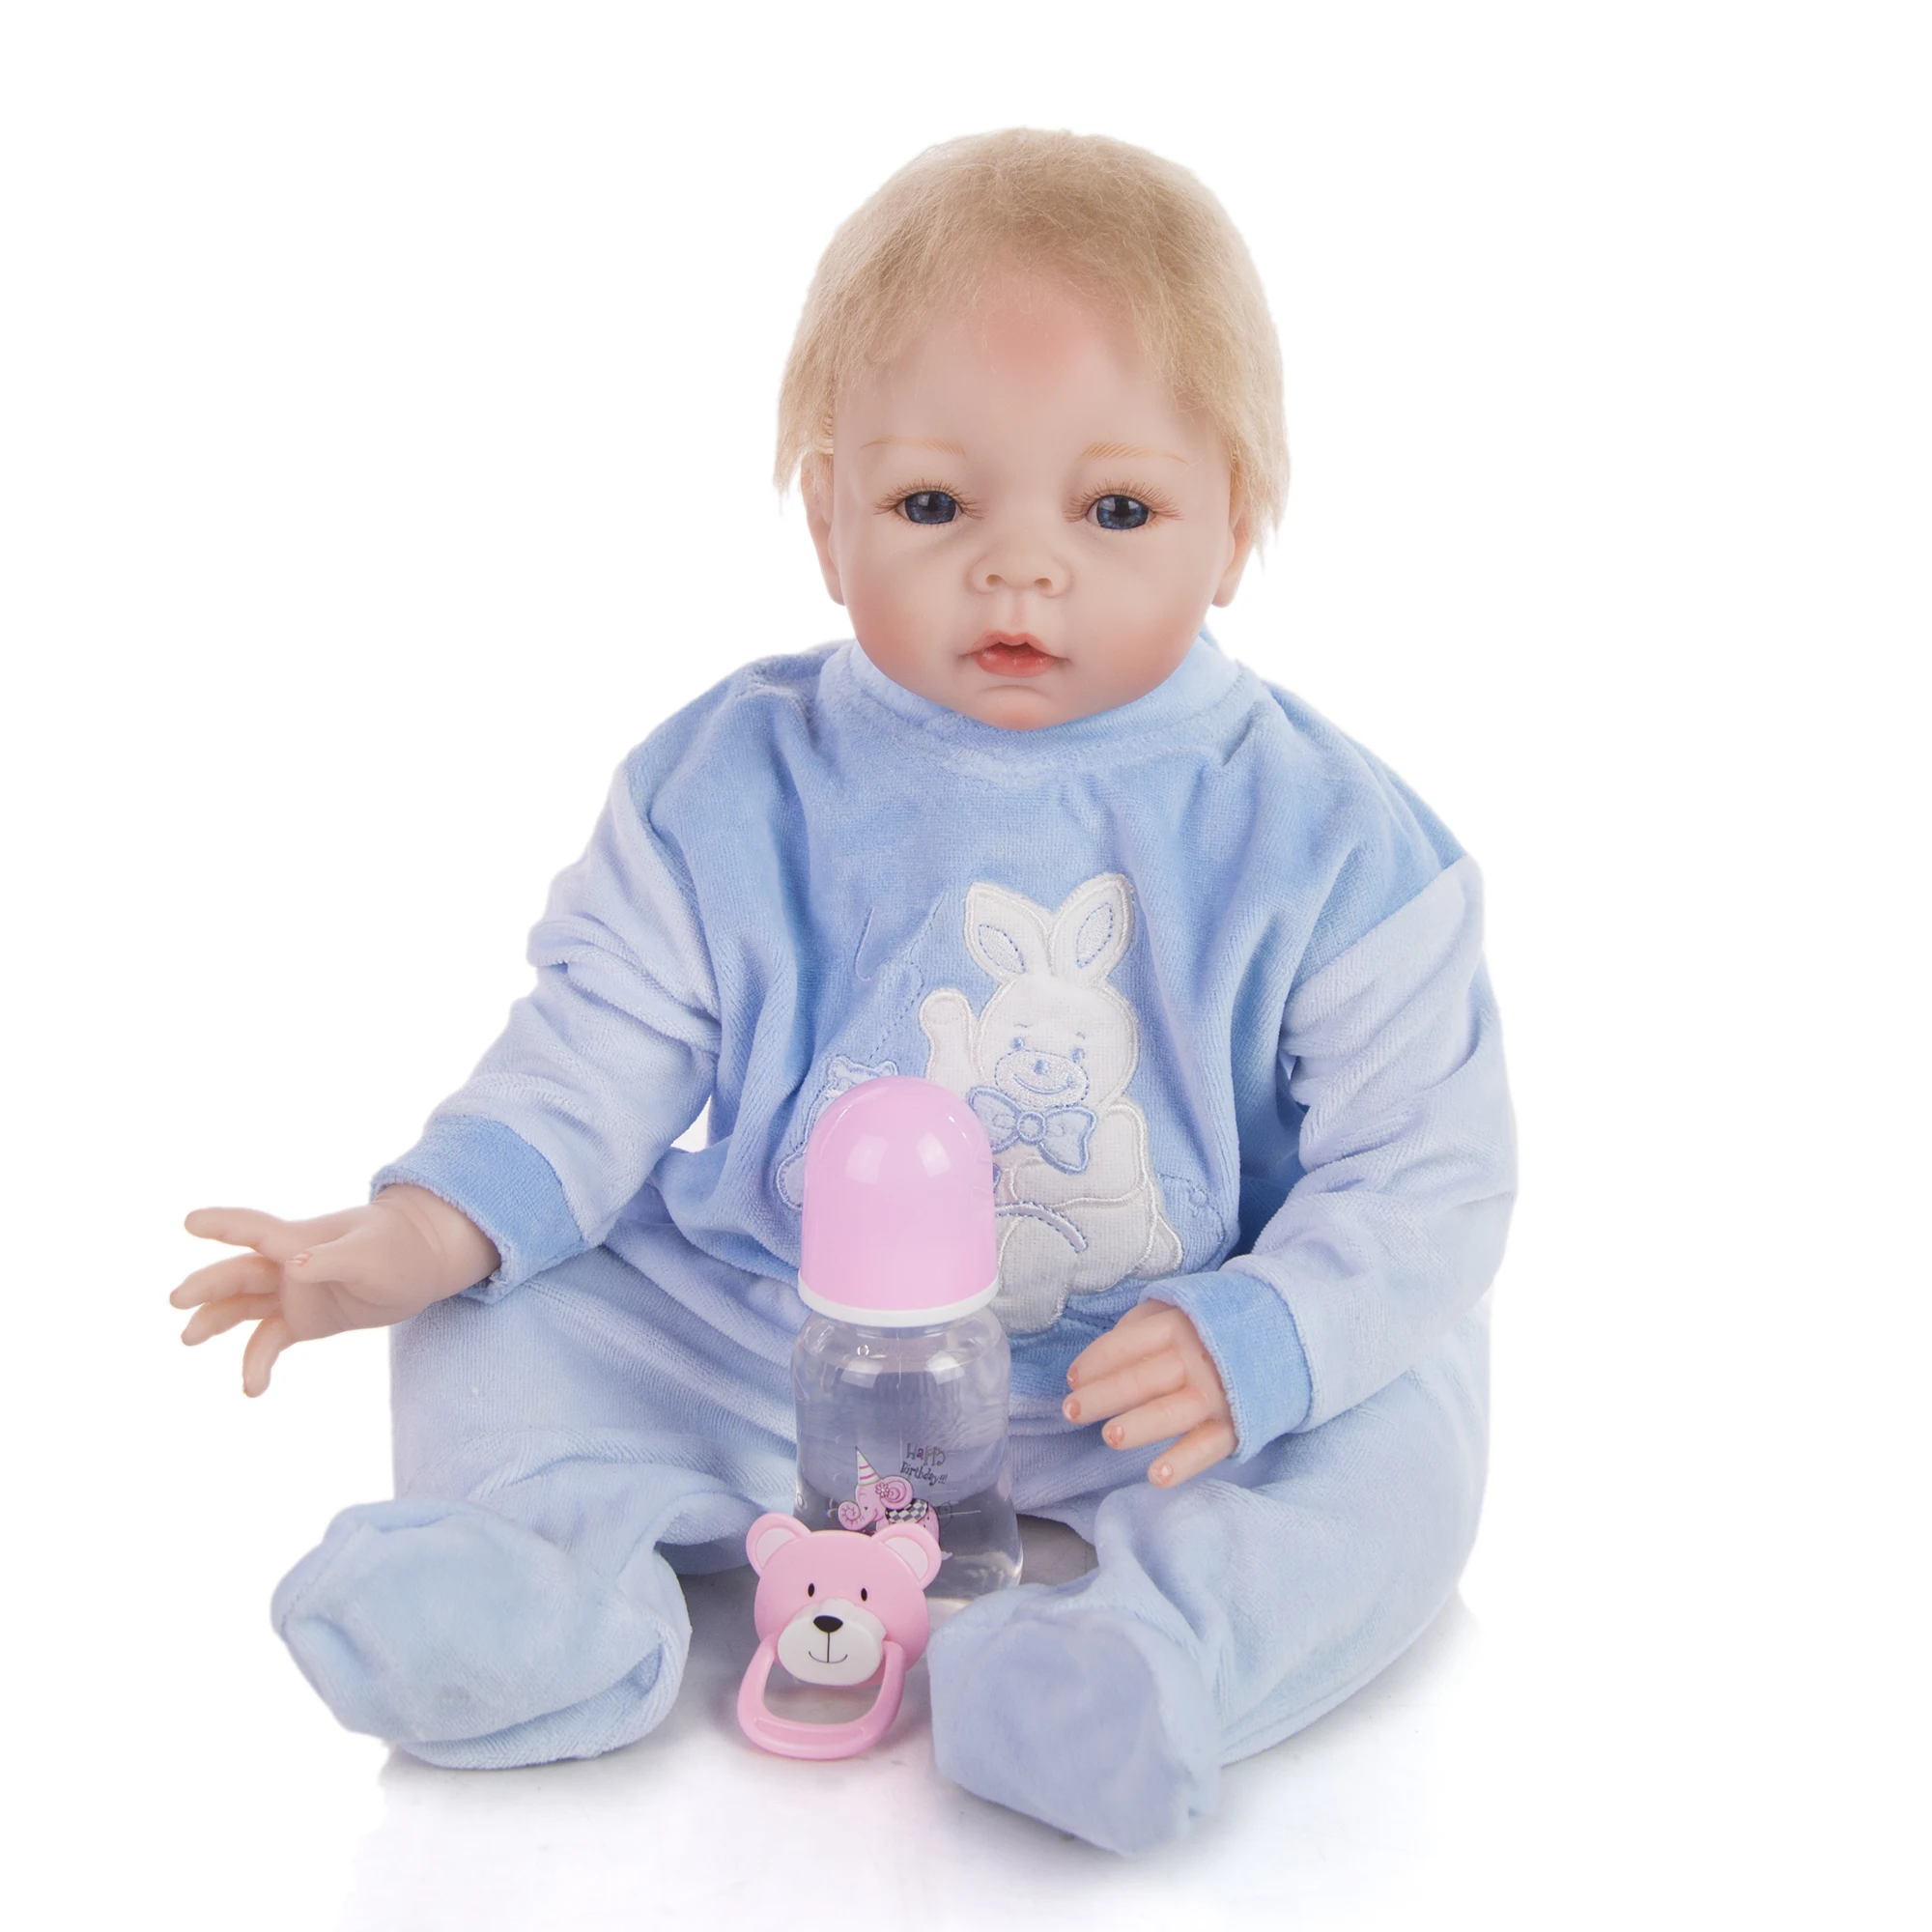 KEIUMI Folga bonecas de 18 a 24 Polegadas de Silicone Rebron Bebês Menino Brinquedos Boneca Bebê Reborn Dolls e Com o Menor Preço de Alta Qualidade Na Venda